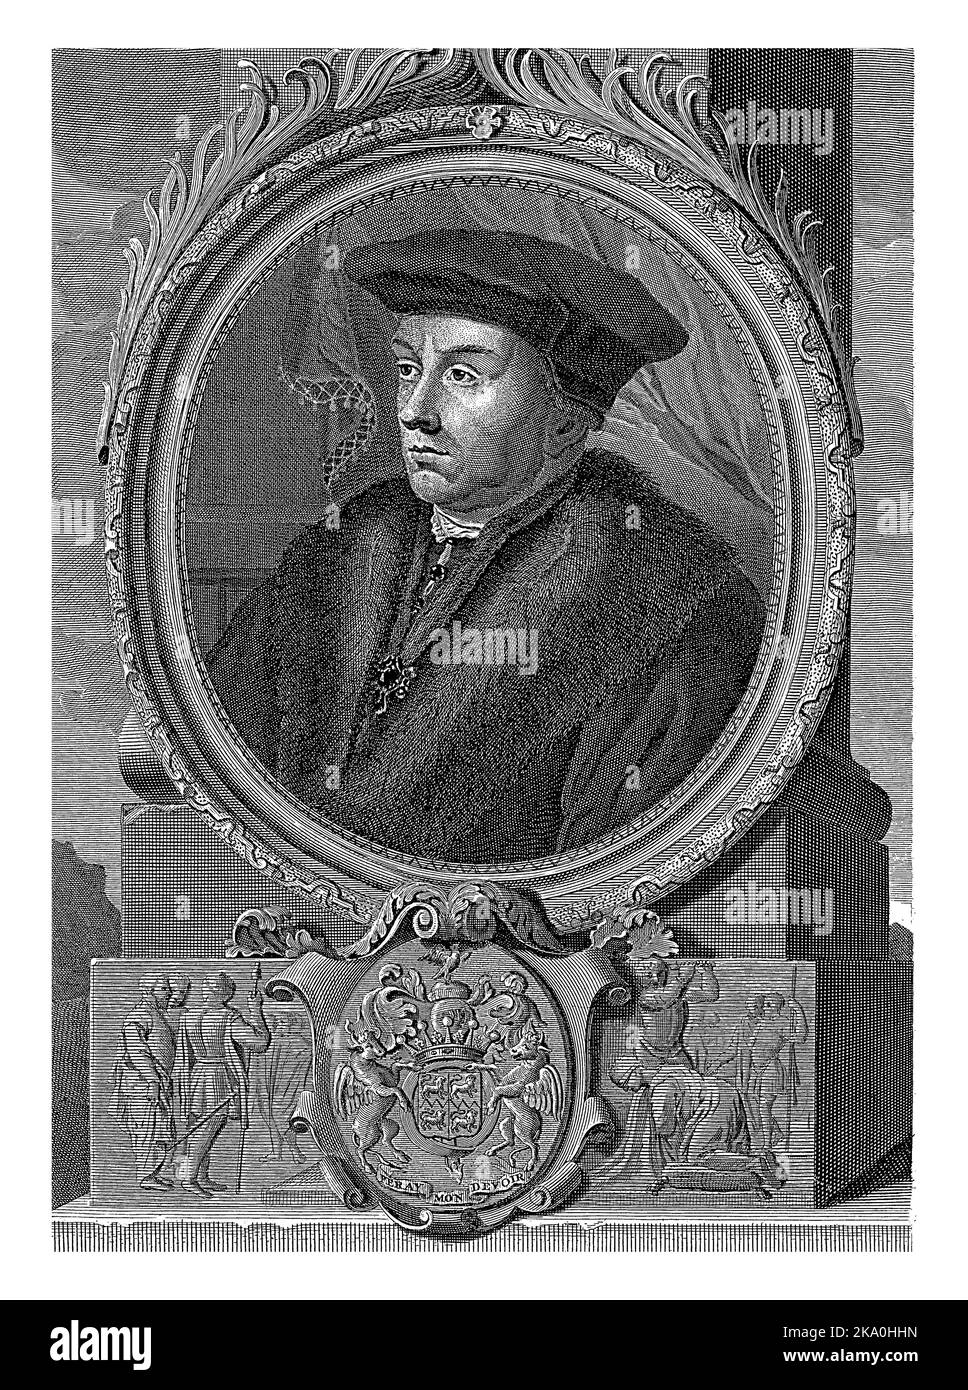 Ritratto dello statista inglese Oliver Cromwell. Sul piedistallo si trovano lo stemma e la decapitazione di Carlo i d'Inghilterra. Foto Stock